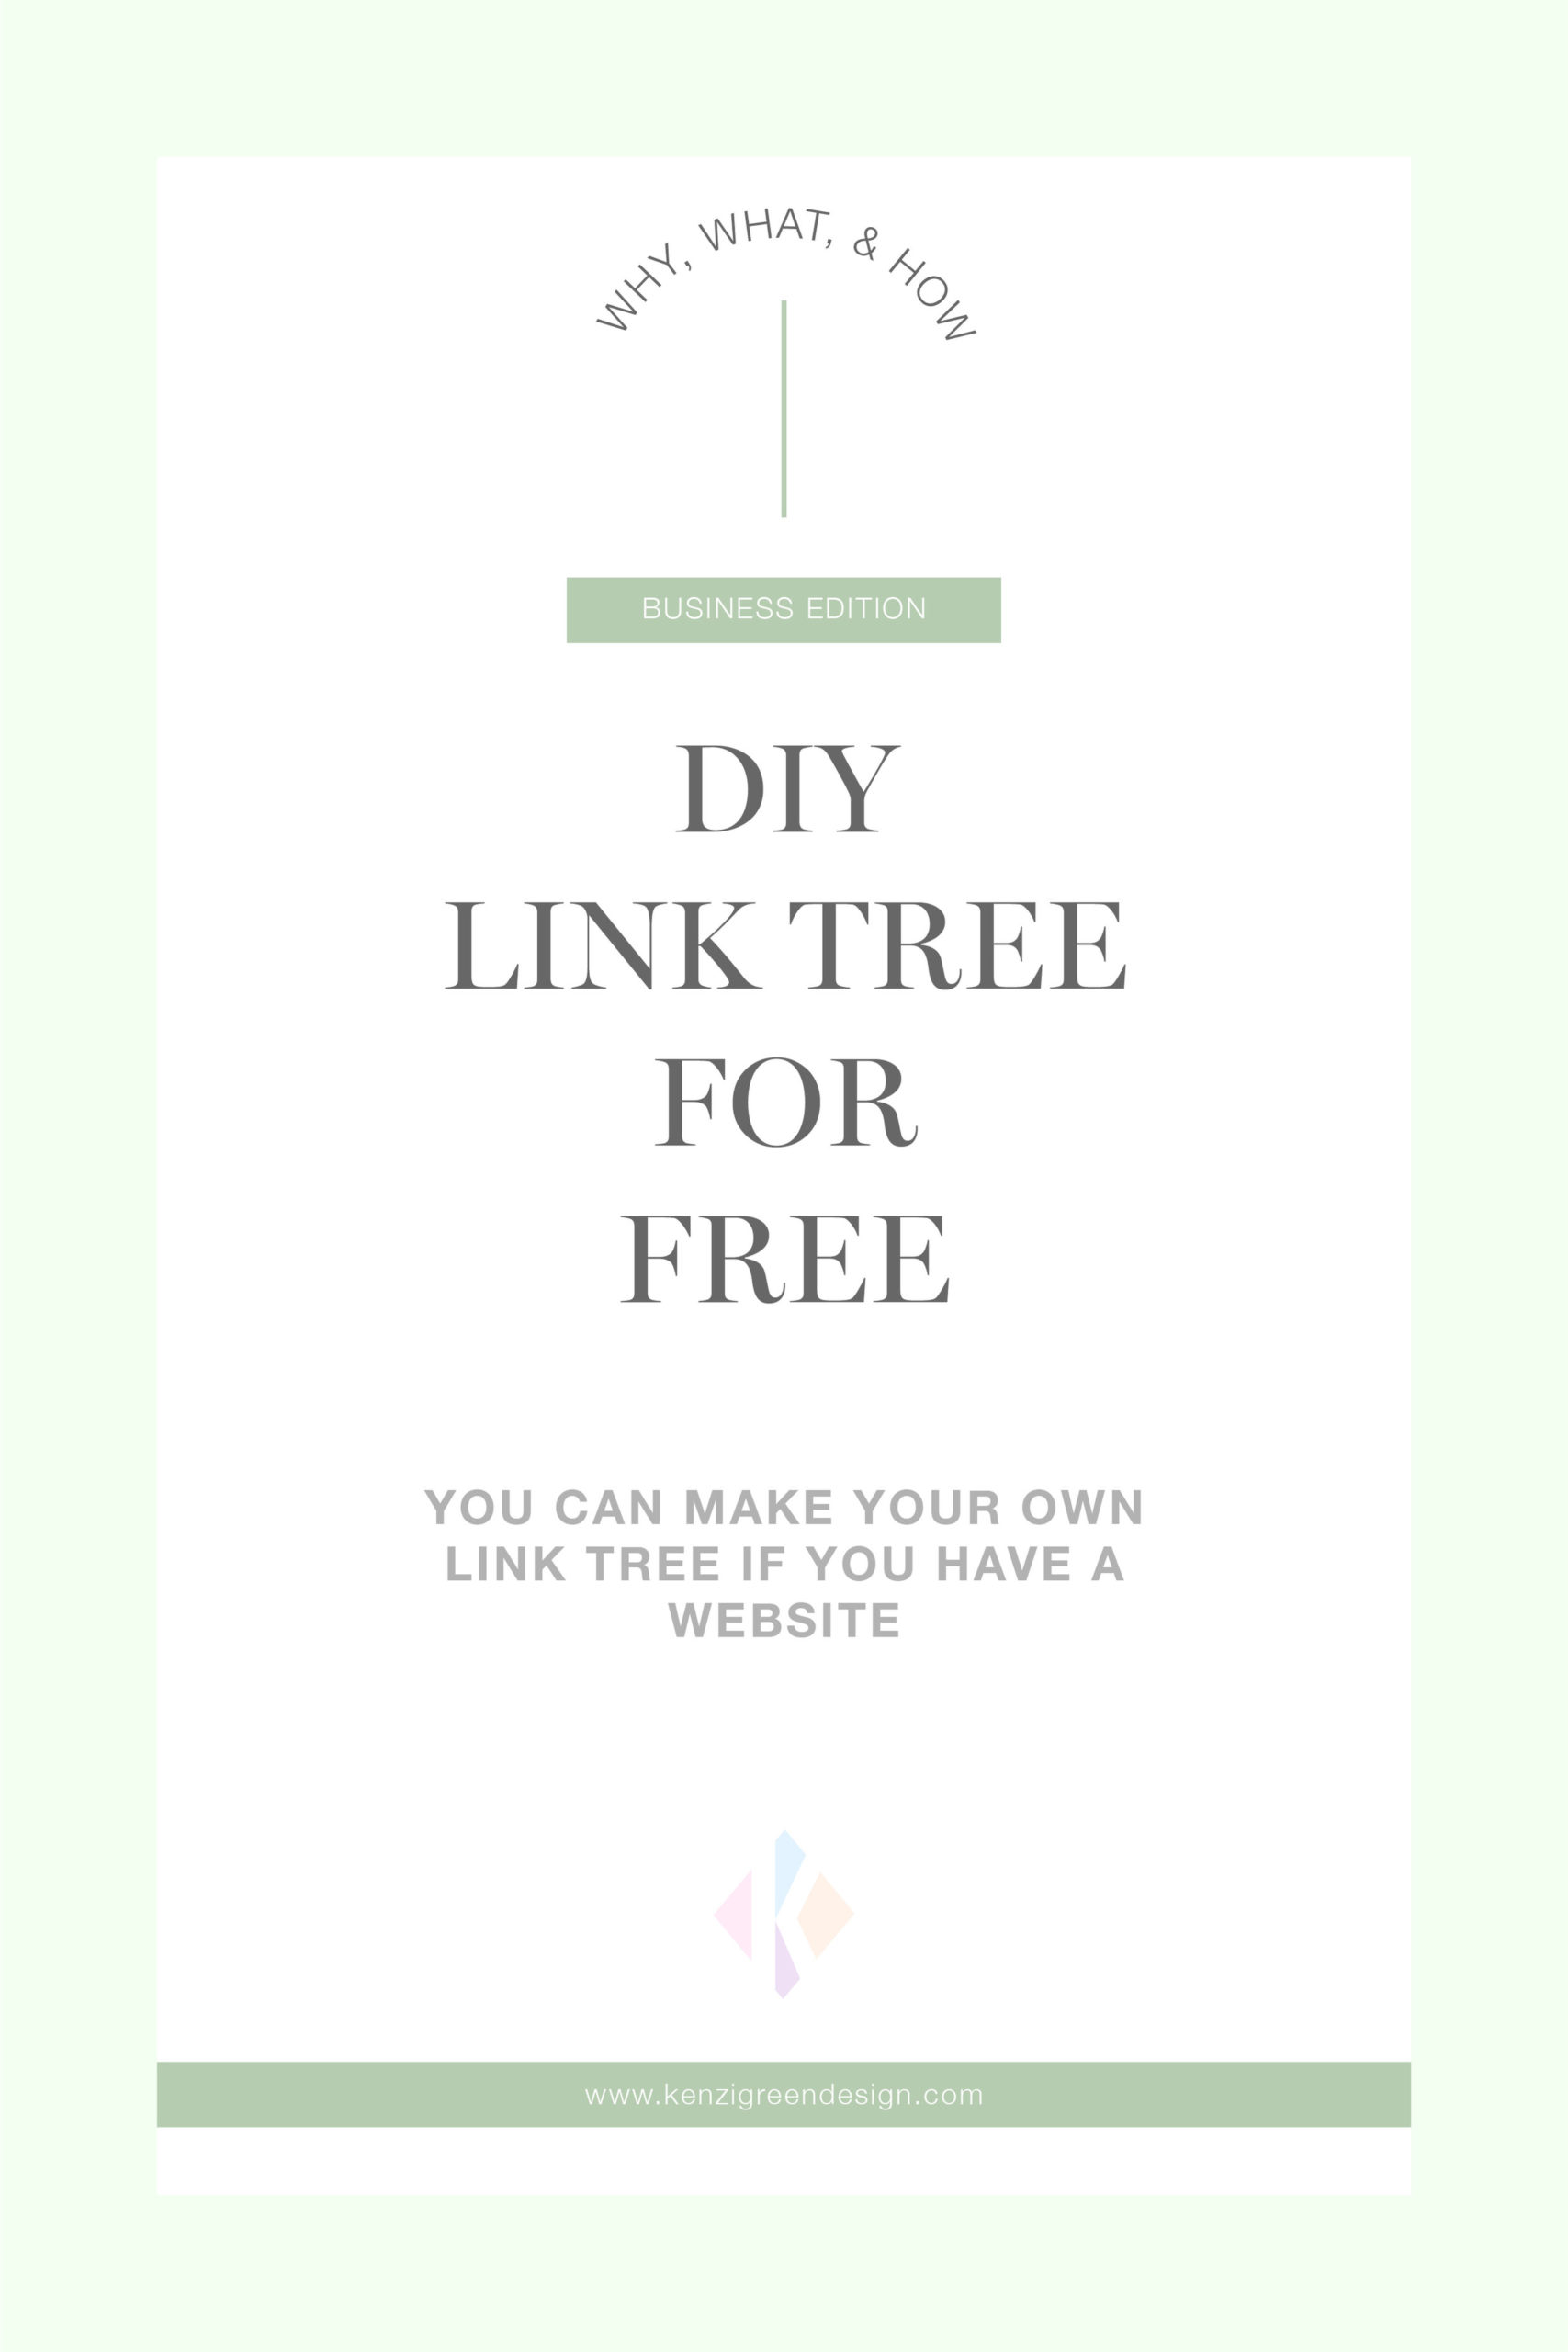 DIY Link Tree For FREE_DIY Link Tree for FREE.jpg